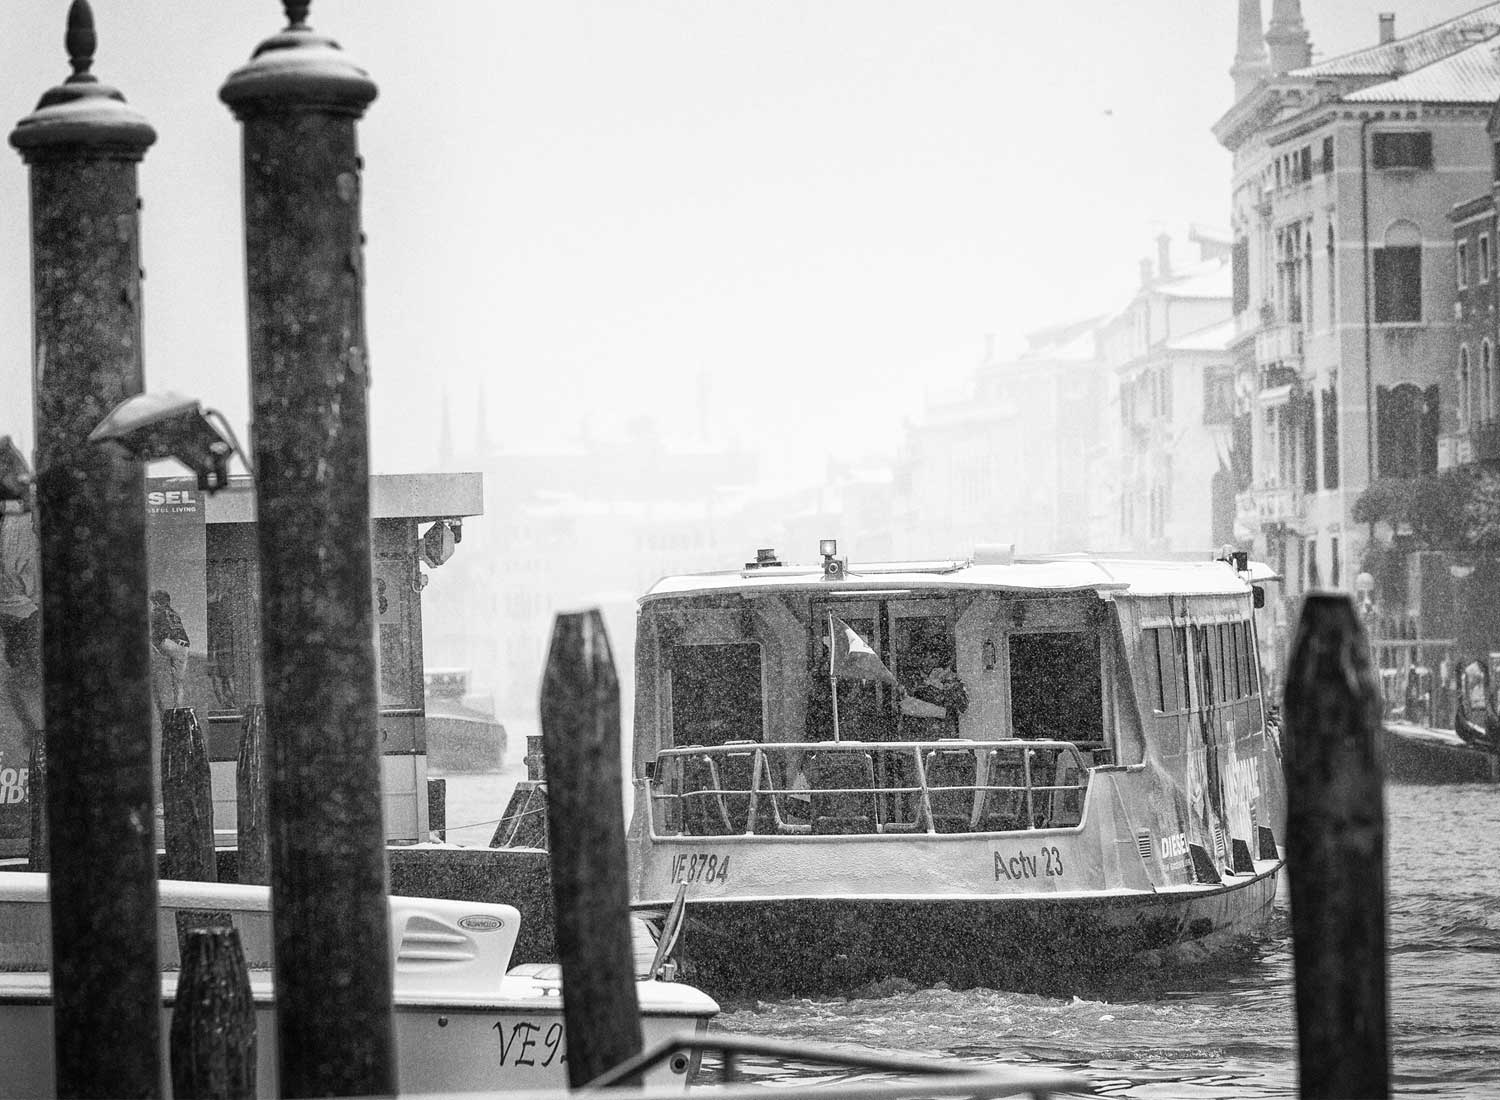 Venice Snowstorm - Jed Smith - jedsmithart